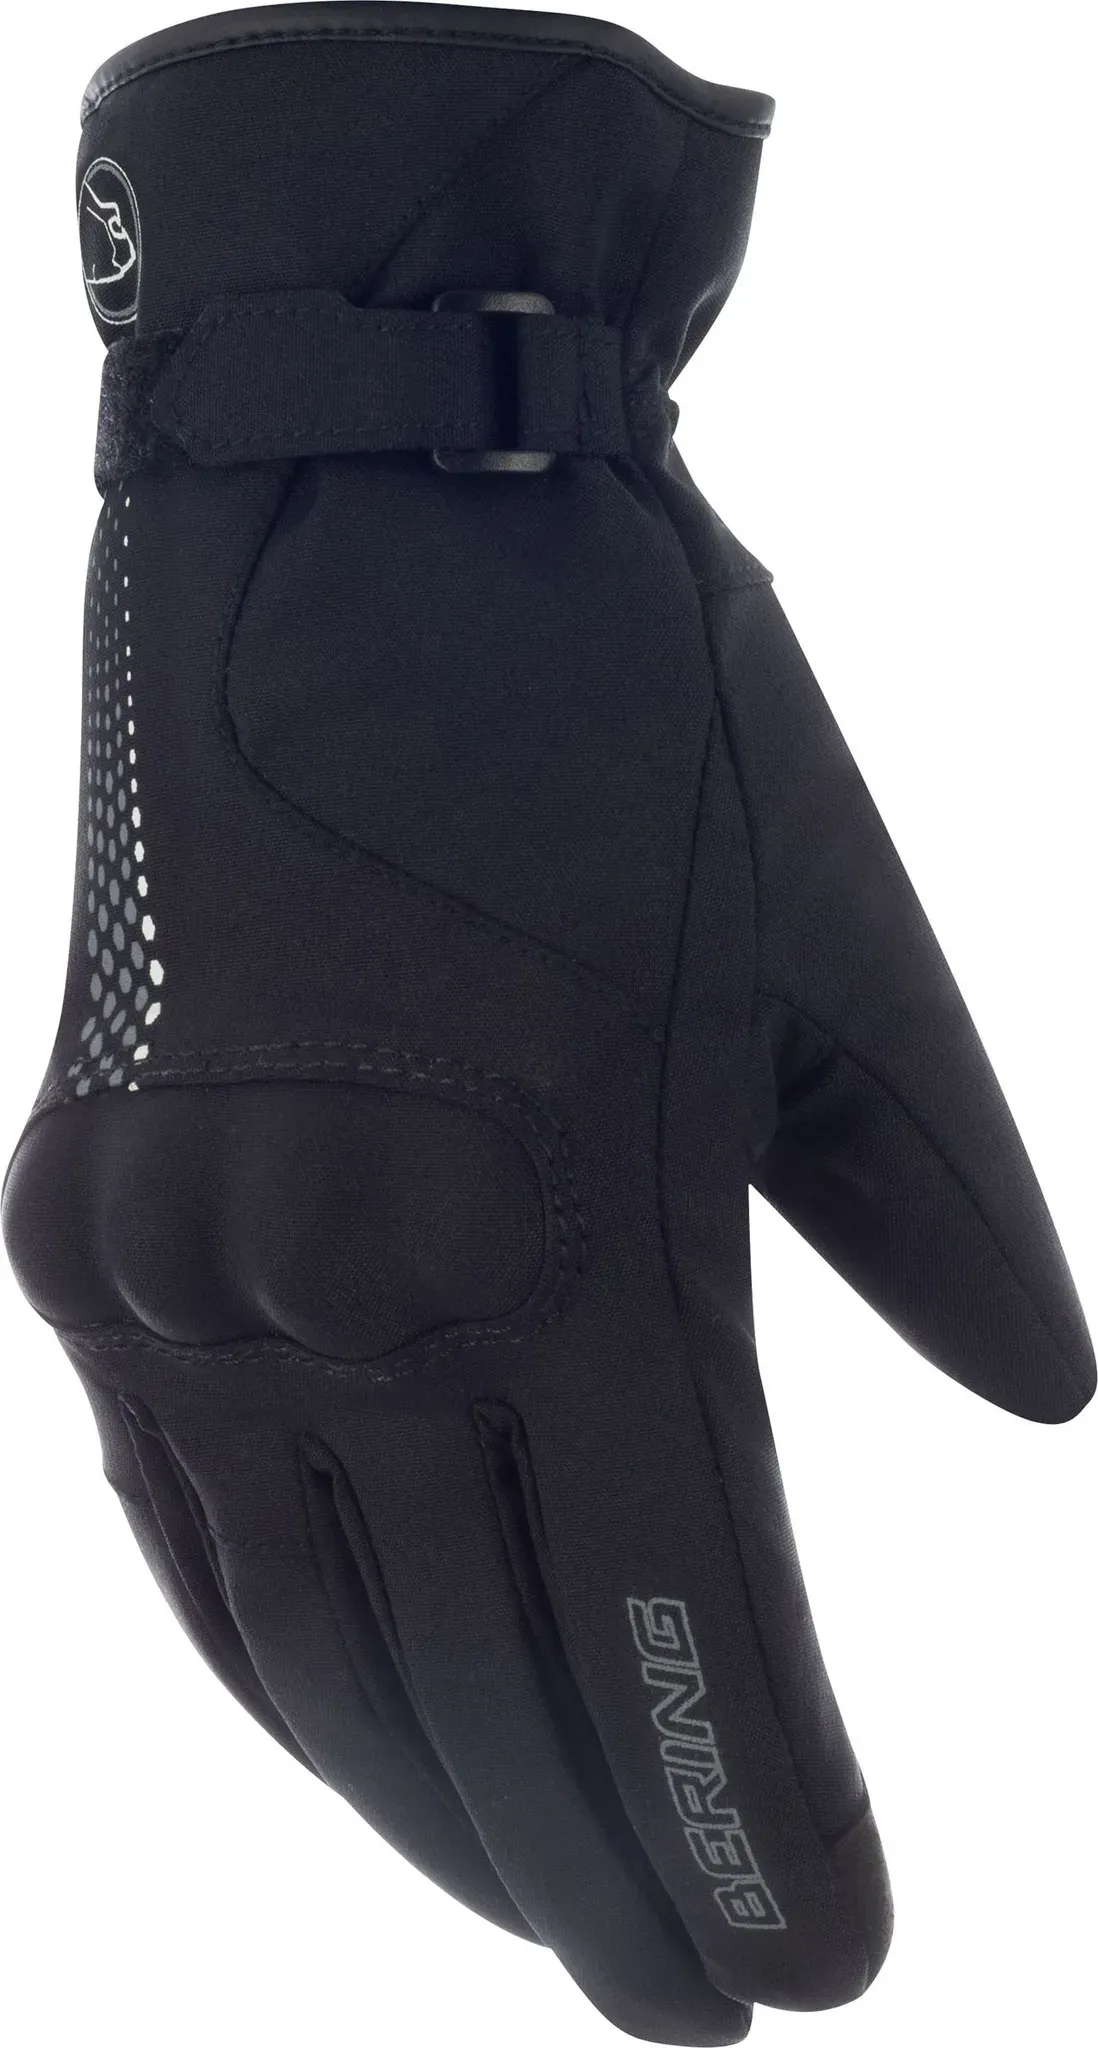 Bering Carmen, gants imperméables pour femmes - Noir/Gris - 8